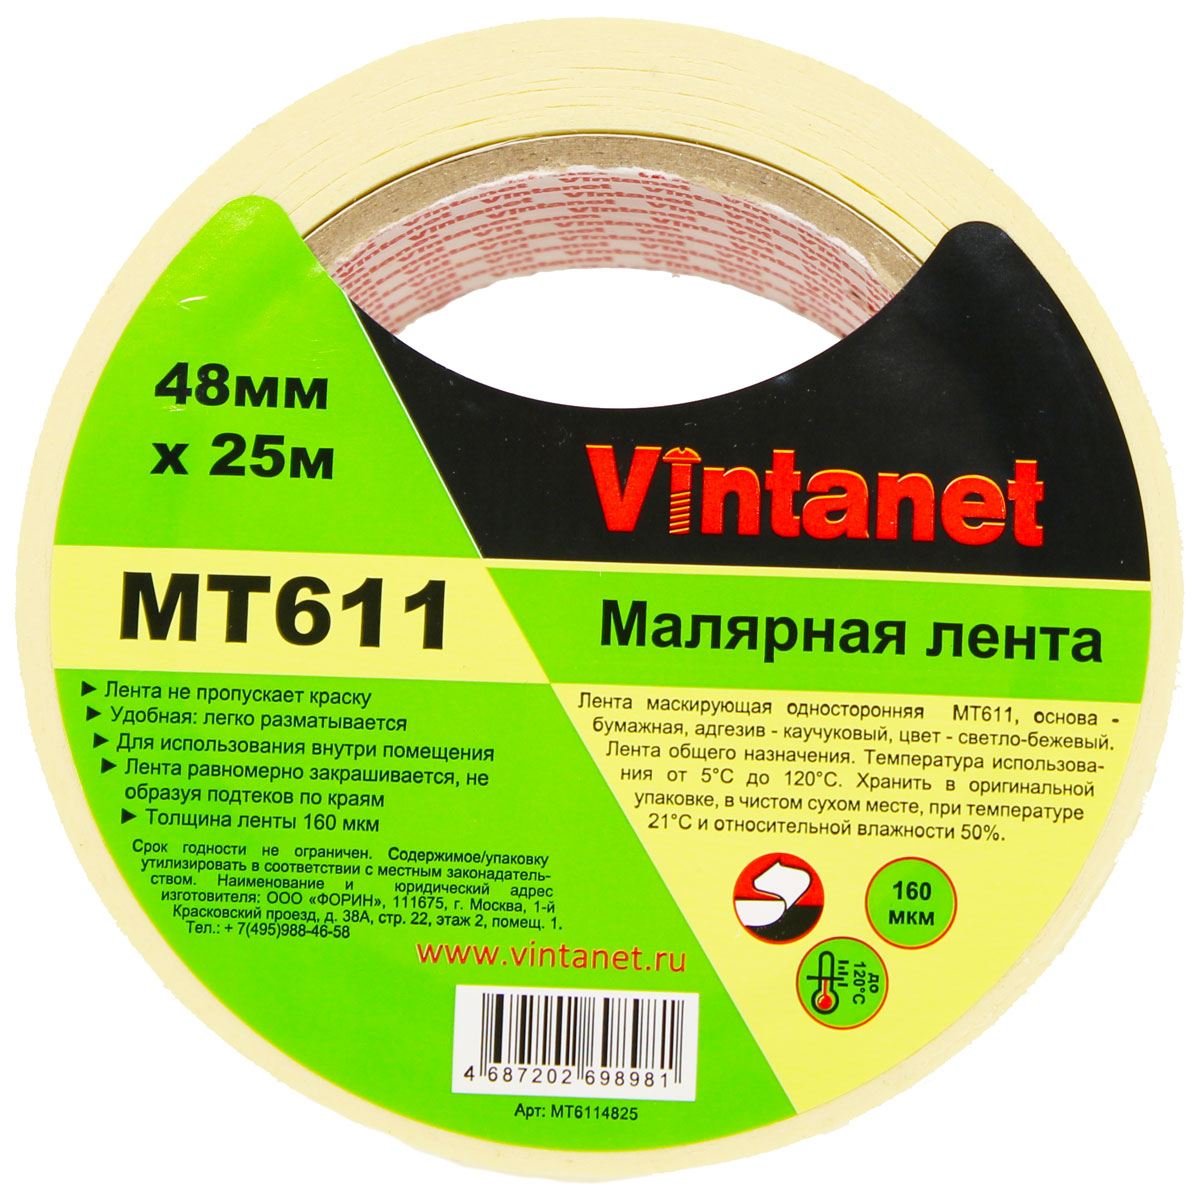 Лента малярная высокотемпературная Vintanet MT611, 120 С, 160 мкм, 48мм х 25м, MT6114825 малярная клейкая лента airline